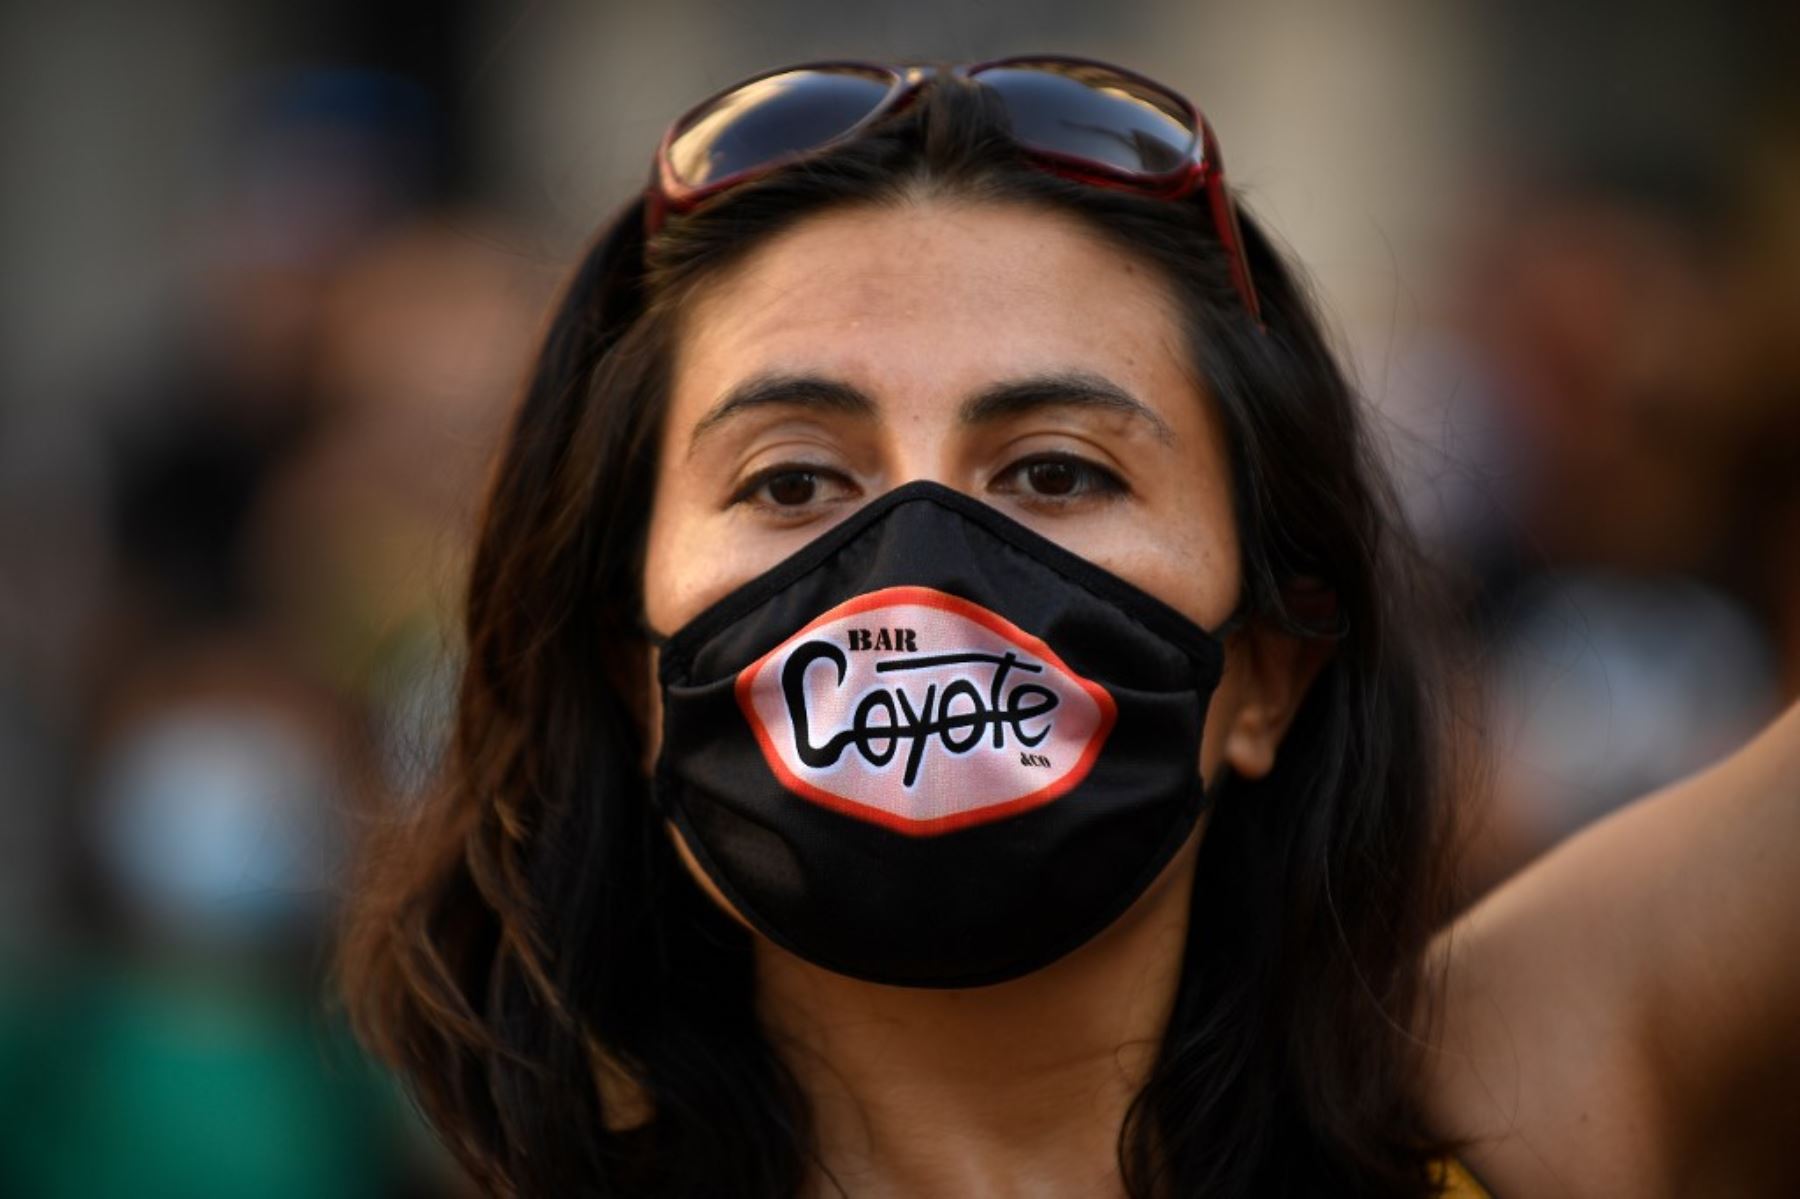 Una mujer con una máscara facial con el logotipo de un bar participa en una manifestación en España. Foto: AFP